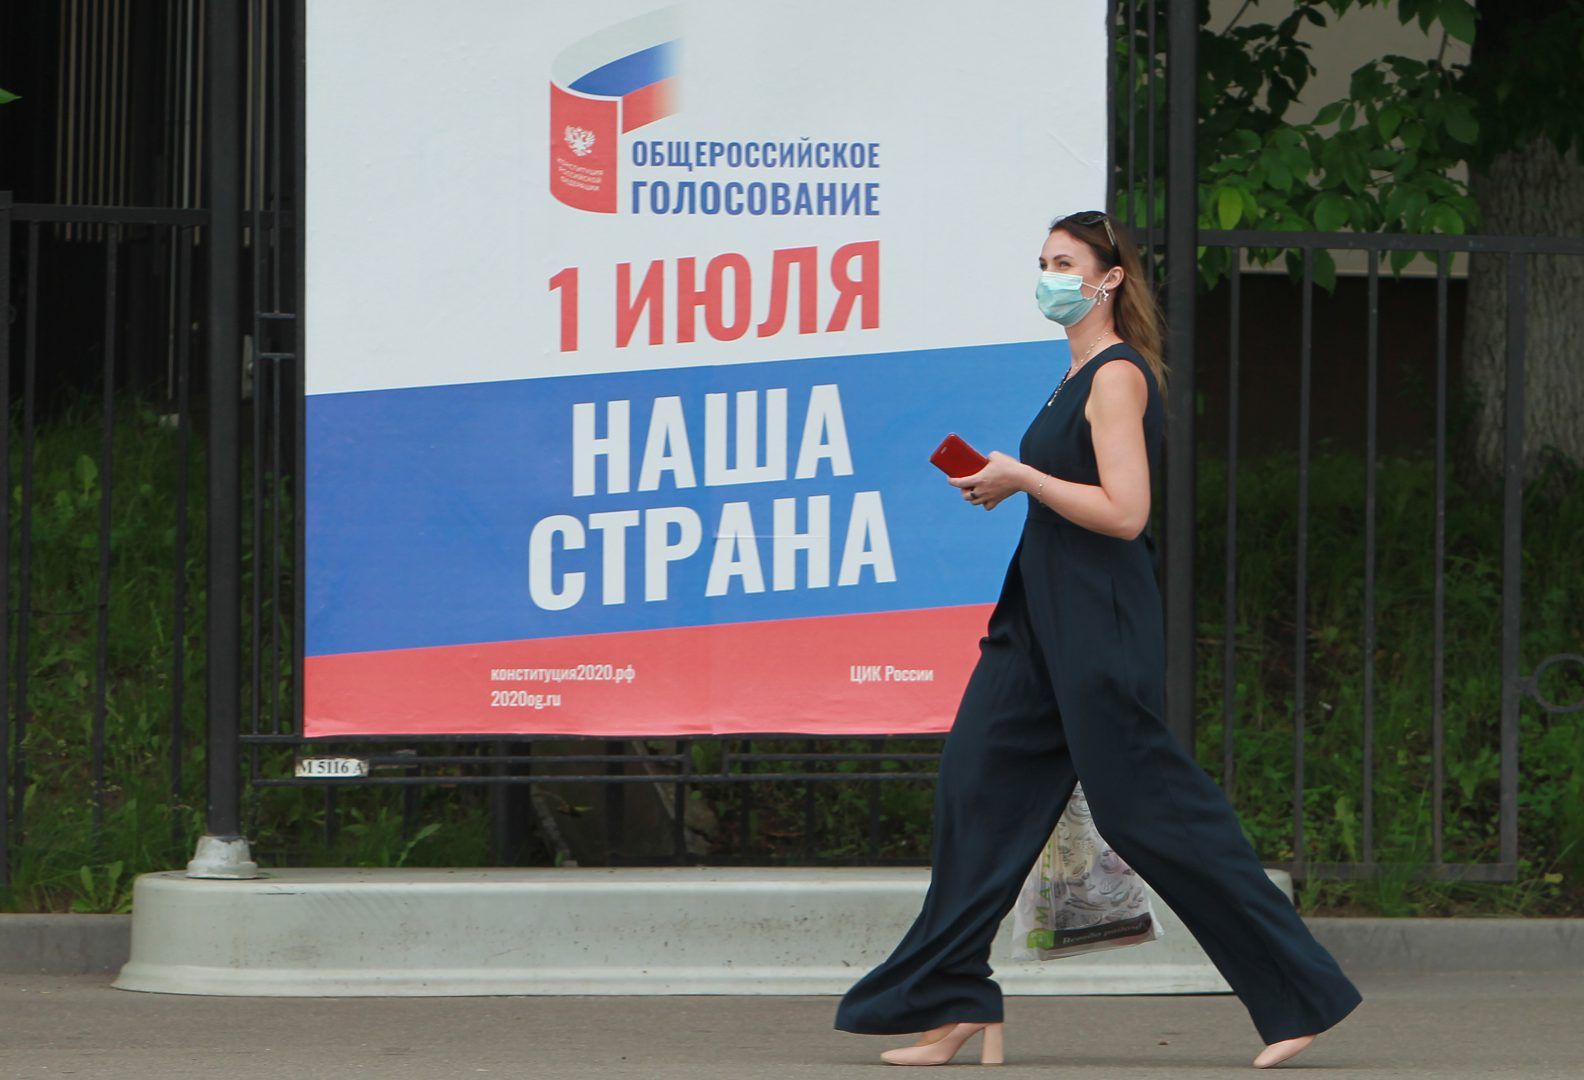 Безопасность во время всероссийского голосования по поправкам в Конституцию будет обеспечена на должном уровне. Фото: Наталия Нечаева